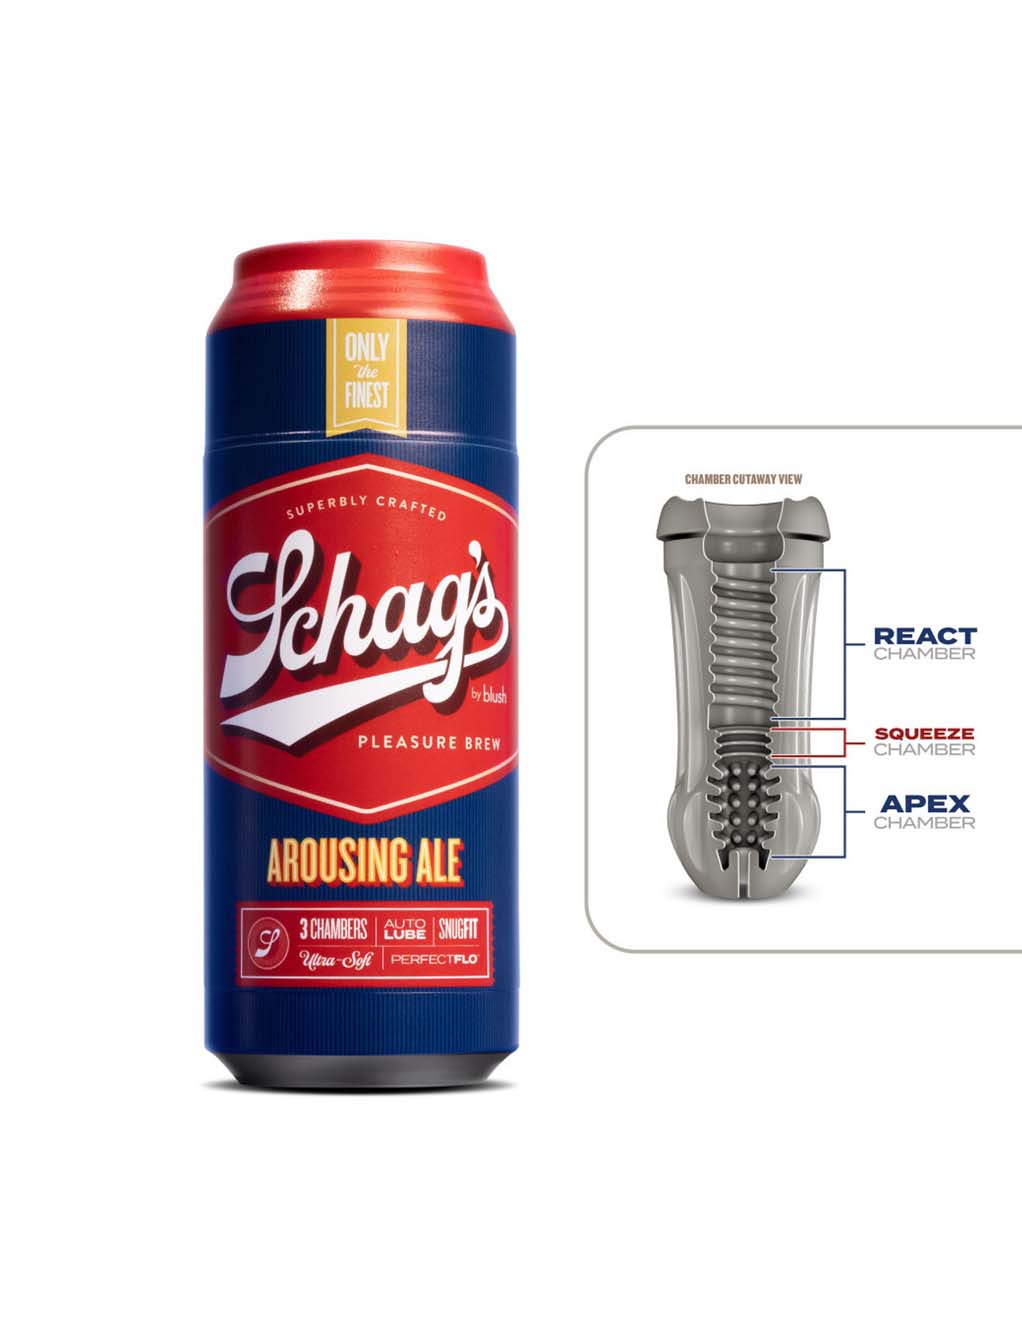 Schag's Arousing Ale